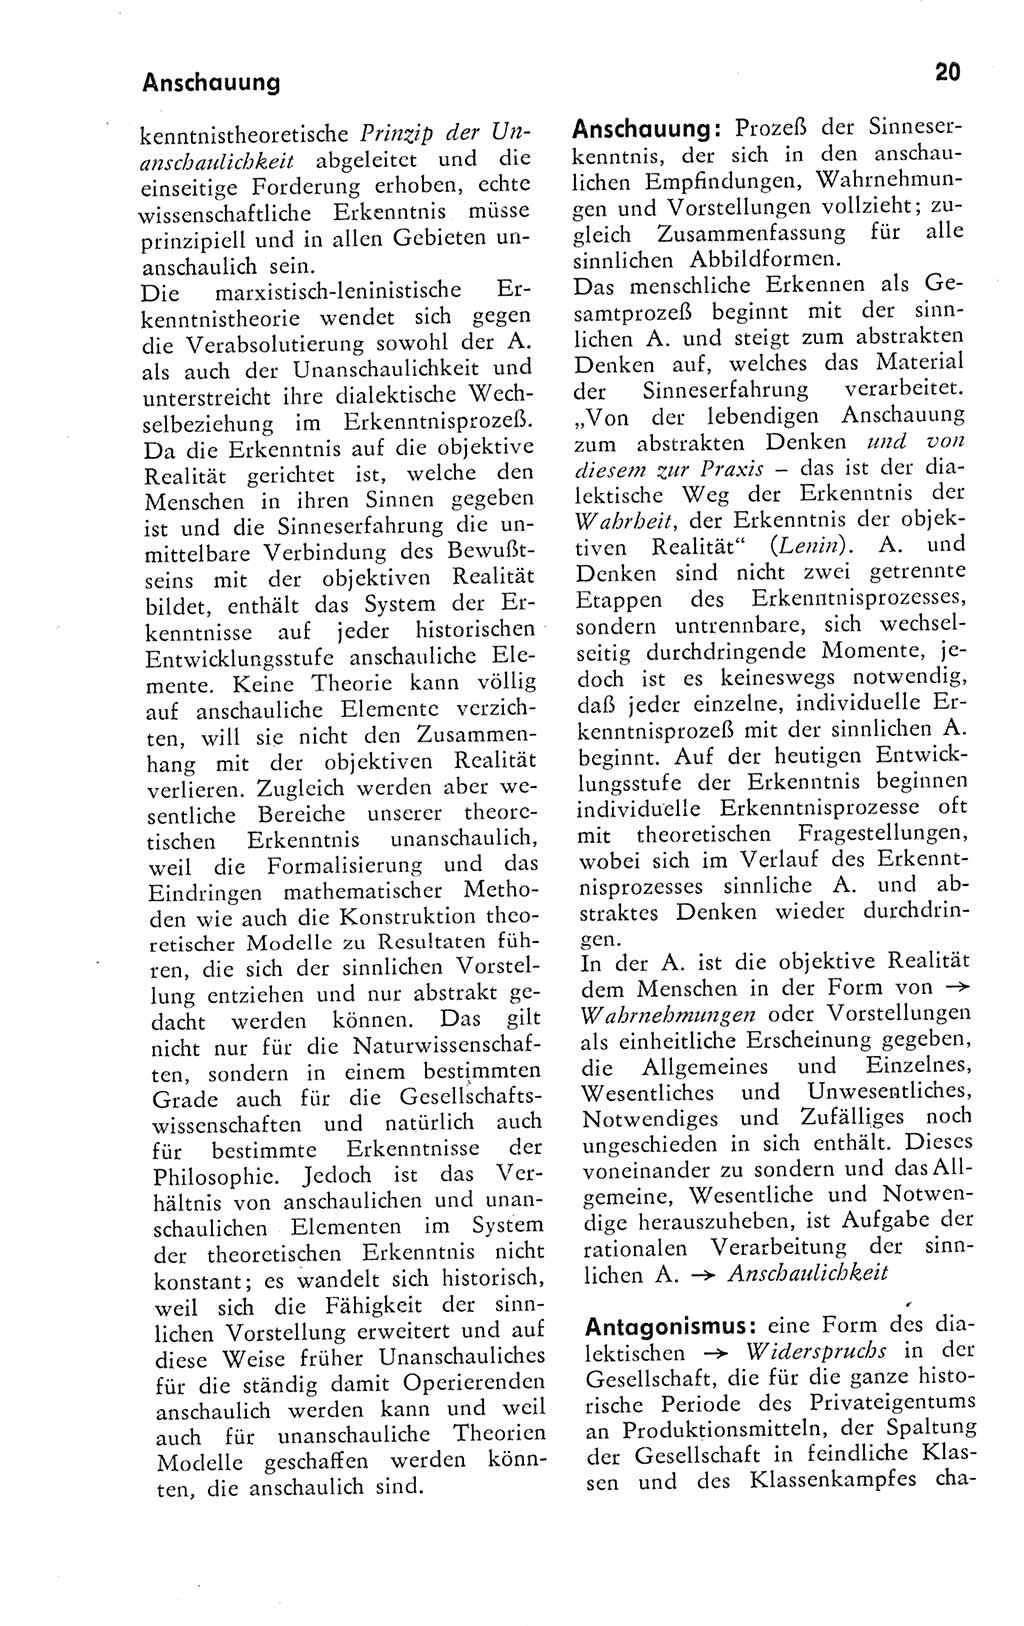 Kleines Wörterbuch der marxistisch-leninistischen Philosophie [Deutsche Demokratische Republik (DDR)] 1974, Seite 20 (Kl. Wb. ML Phil. DDR 1974, S. 20)